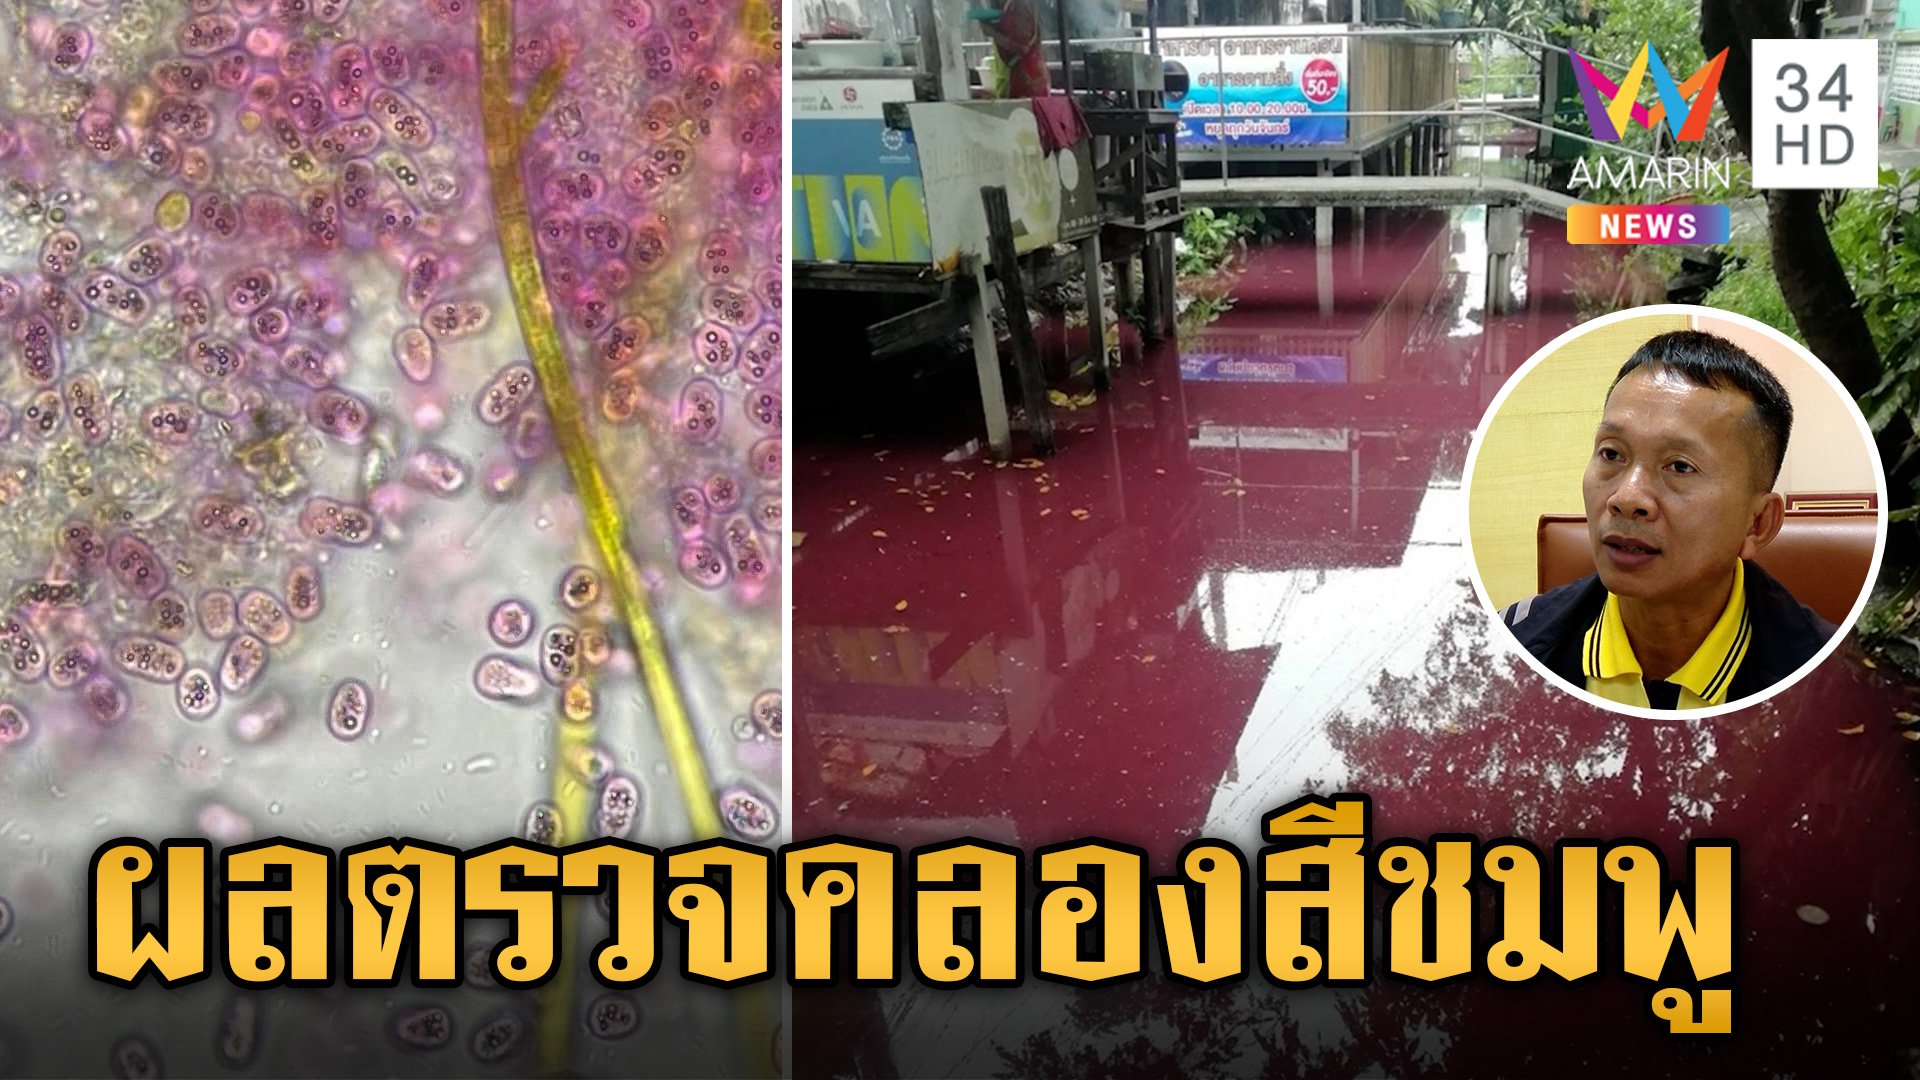 ผงะ! ผลตรวจน้ำจาก "คลองสีชมพู" แบคทีเรียเพียบสุดอันตราย  | ข่าวเย็นอมรินทร์ | 19 ก.พ. 67 | AMARIN TVHD34